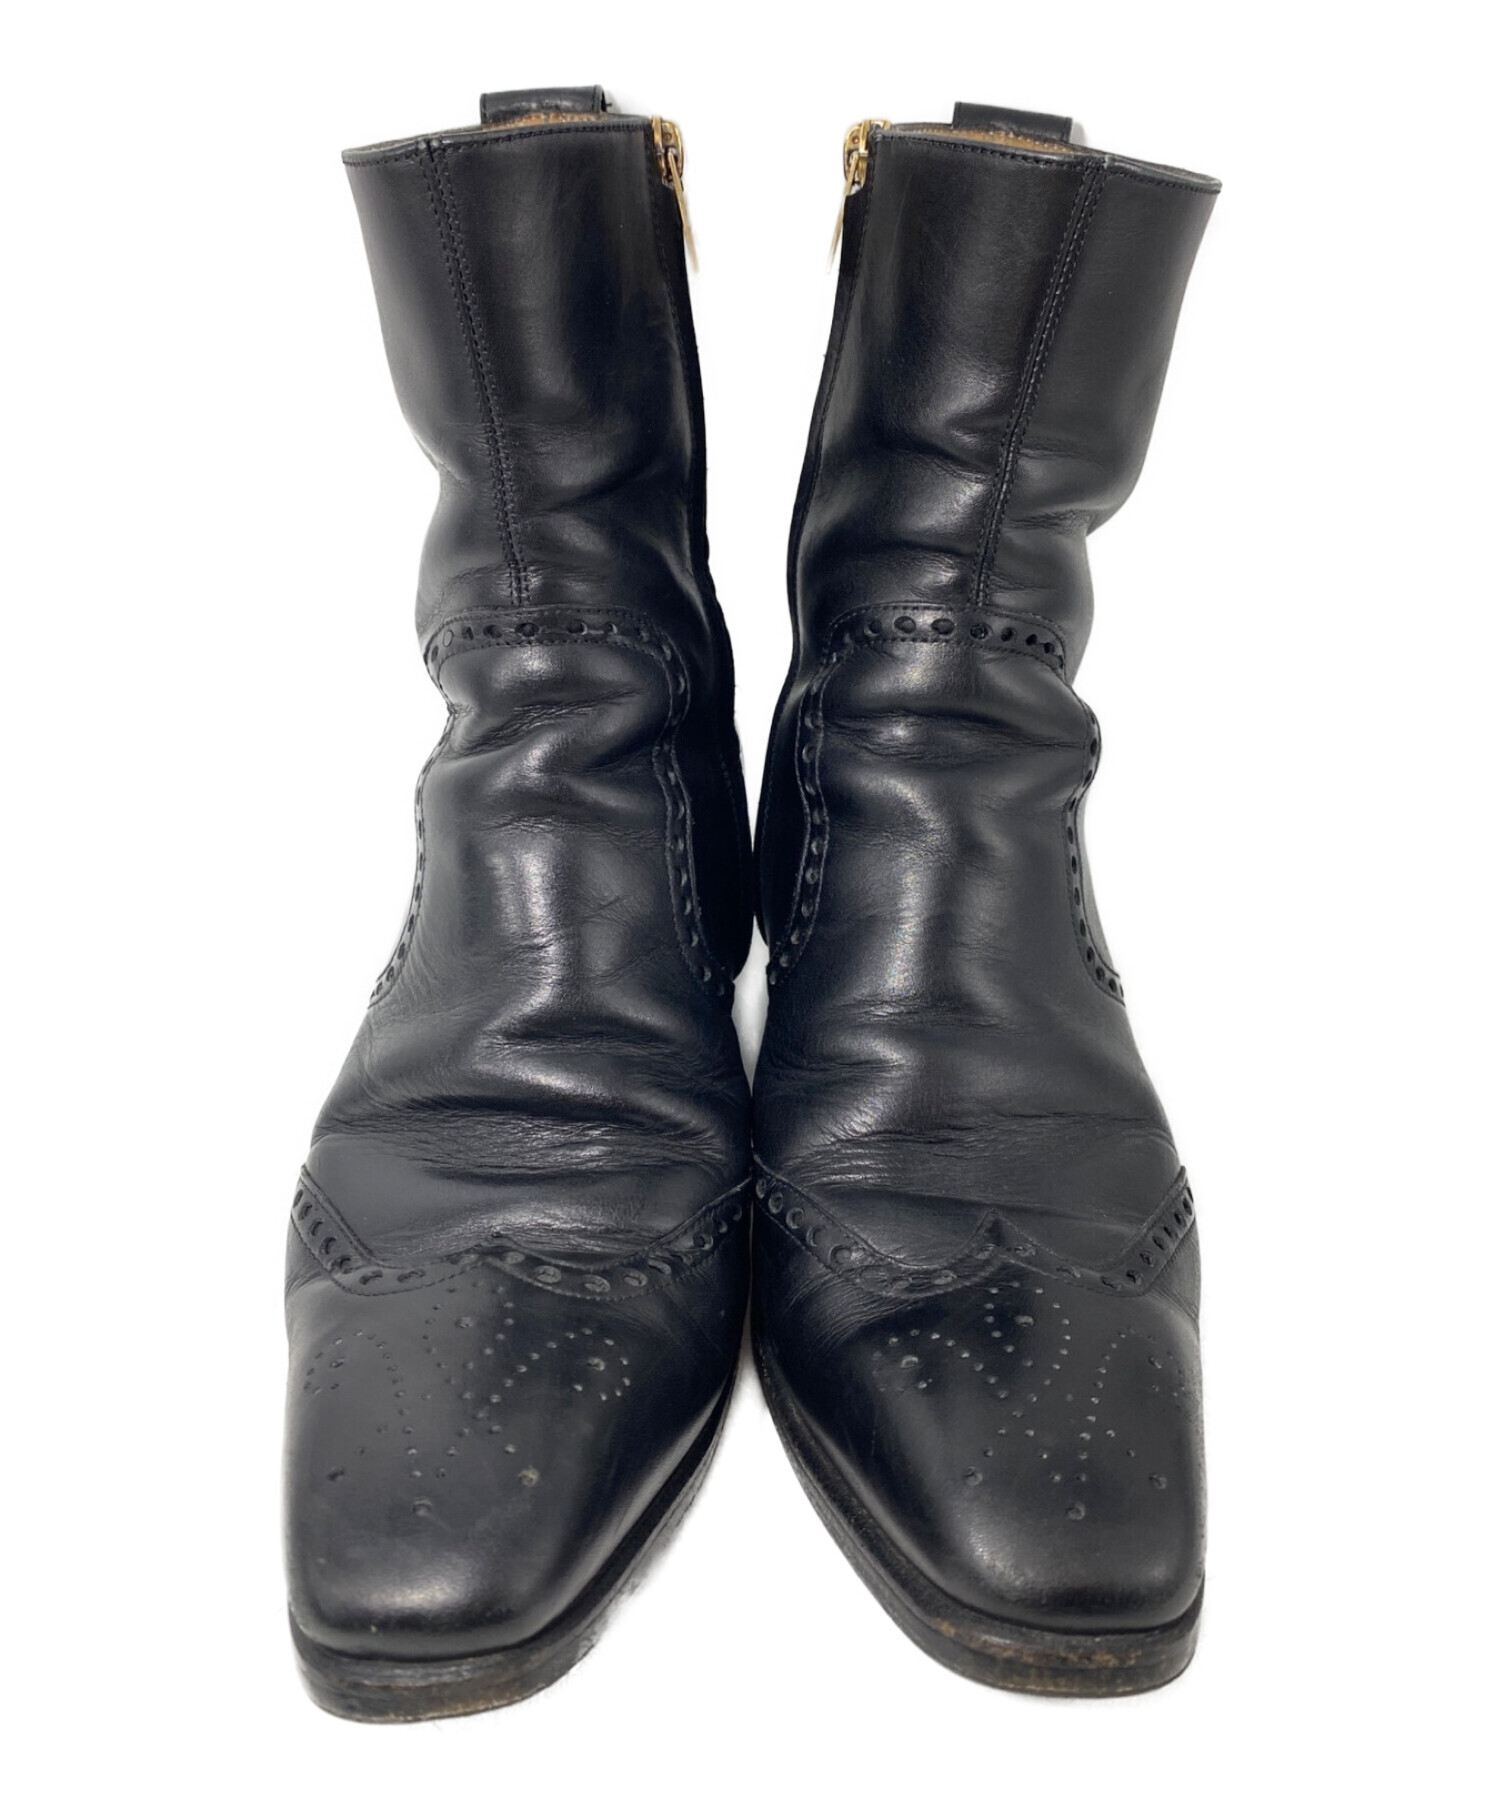 Yves Saint Laurent (イヴサンローラン) ウィングチップブーツ ブラック サイズ:40 1/2